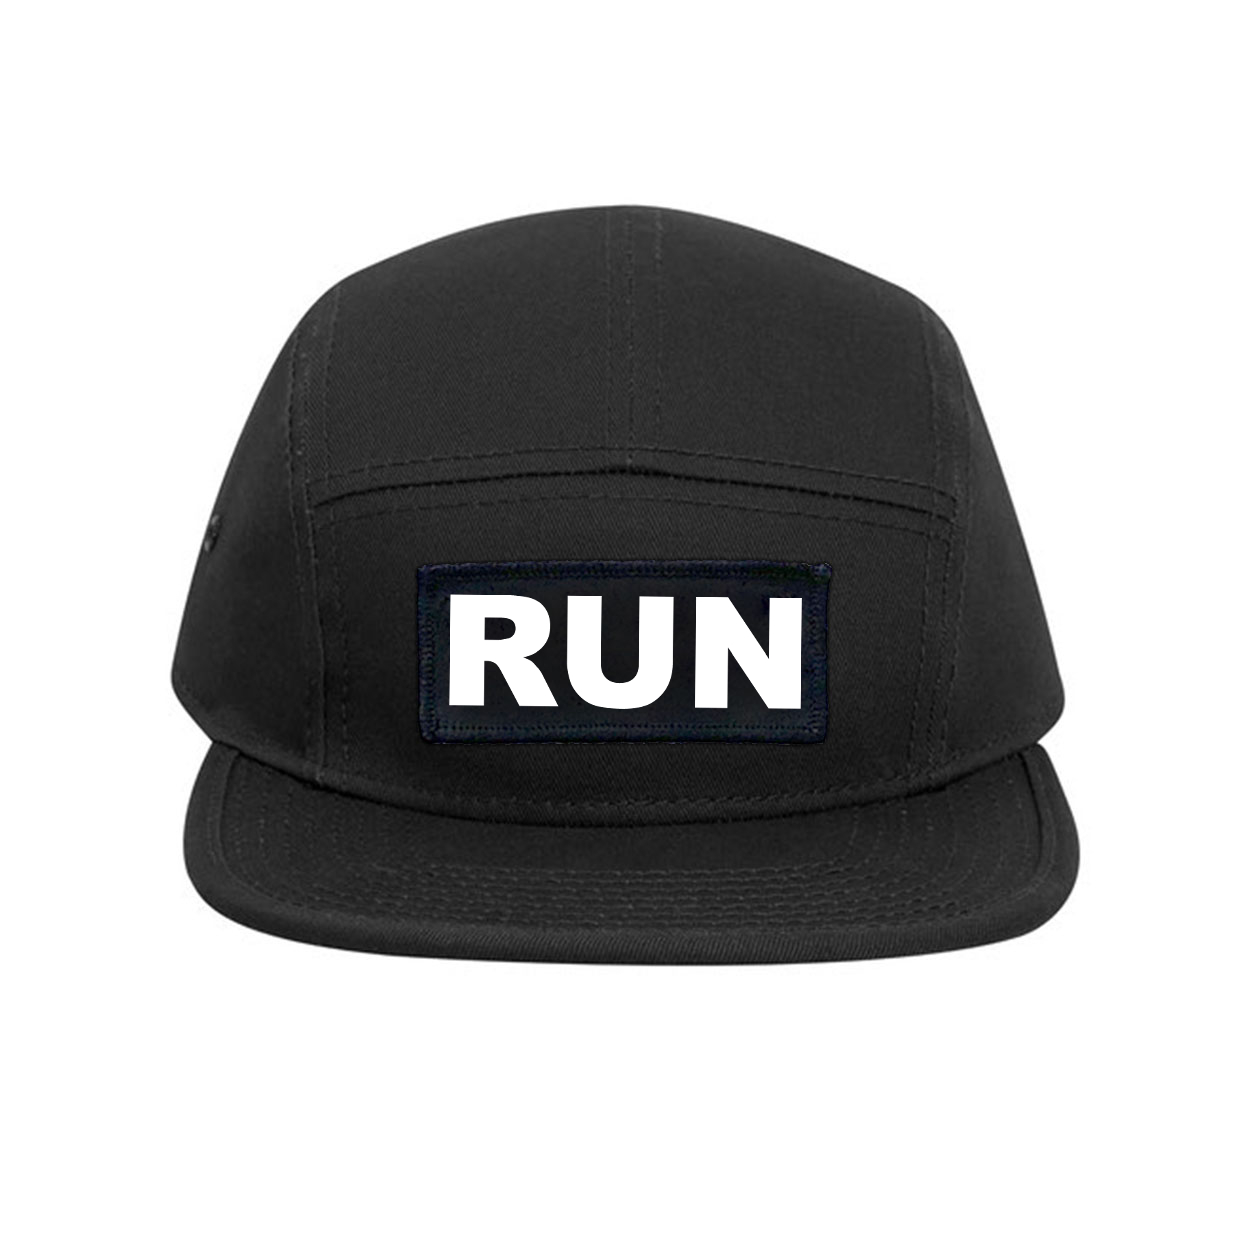 Run Brand Logo Classic Woven Patch Classic Camper Hat Black